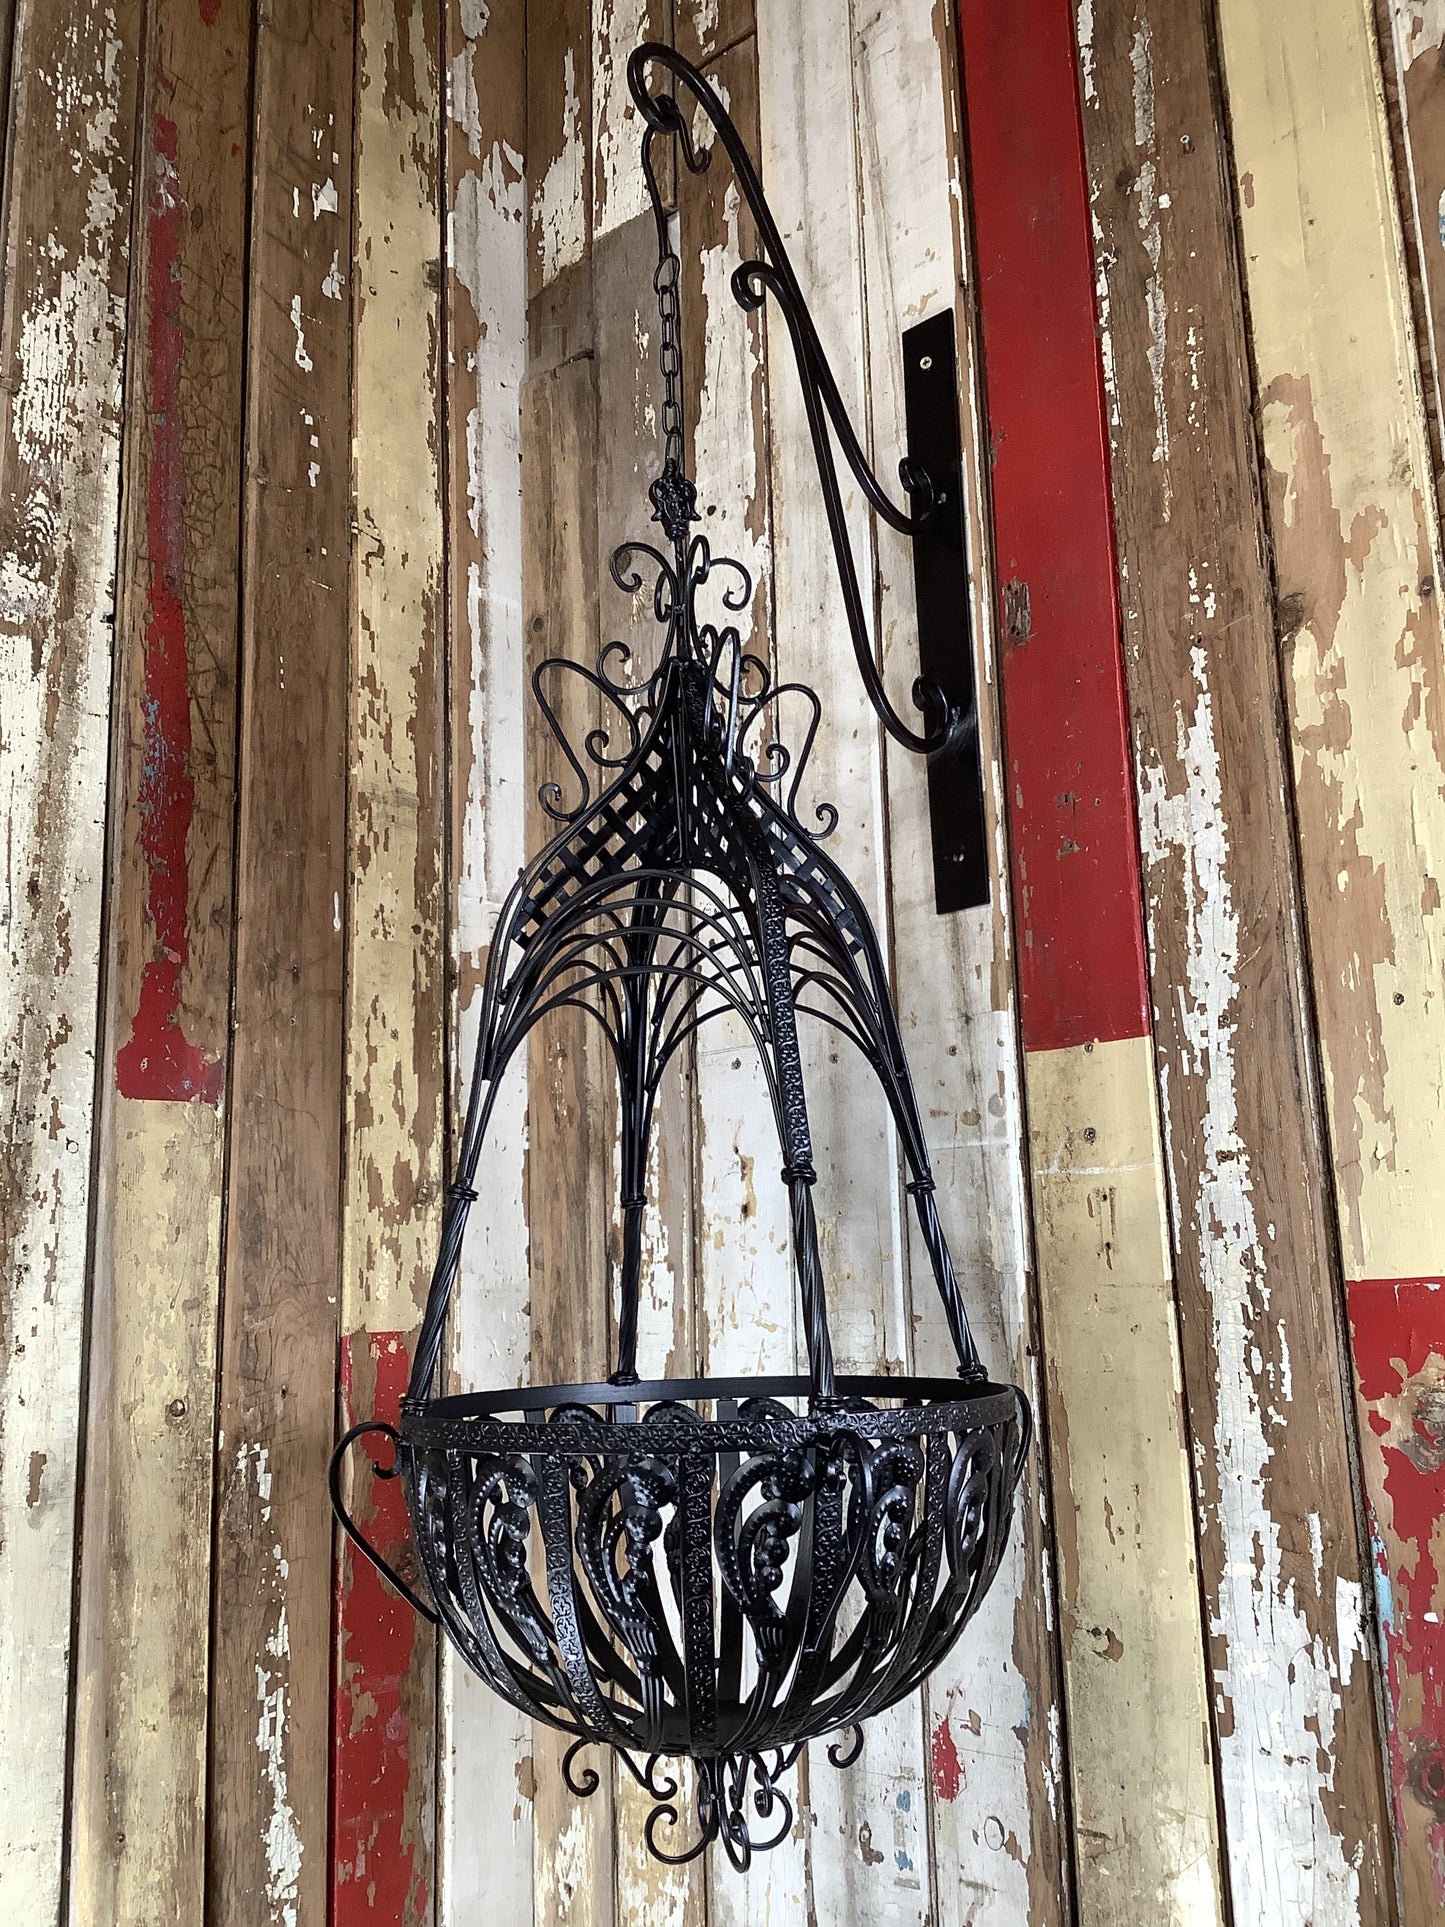 15” Large Antique Black French Style Wrought Iron Hanging Basket Amazing